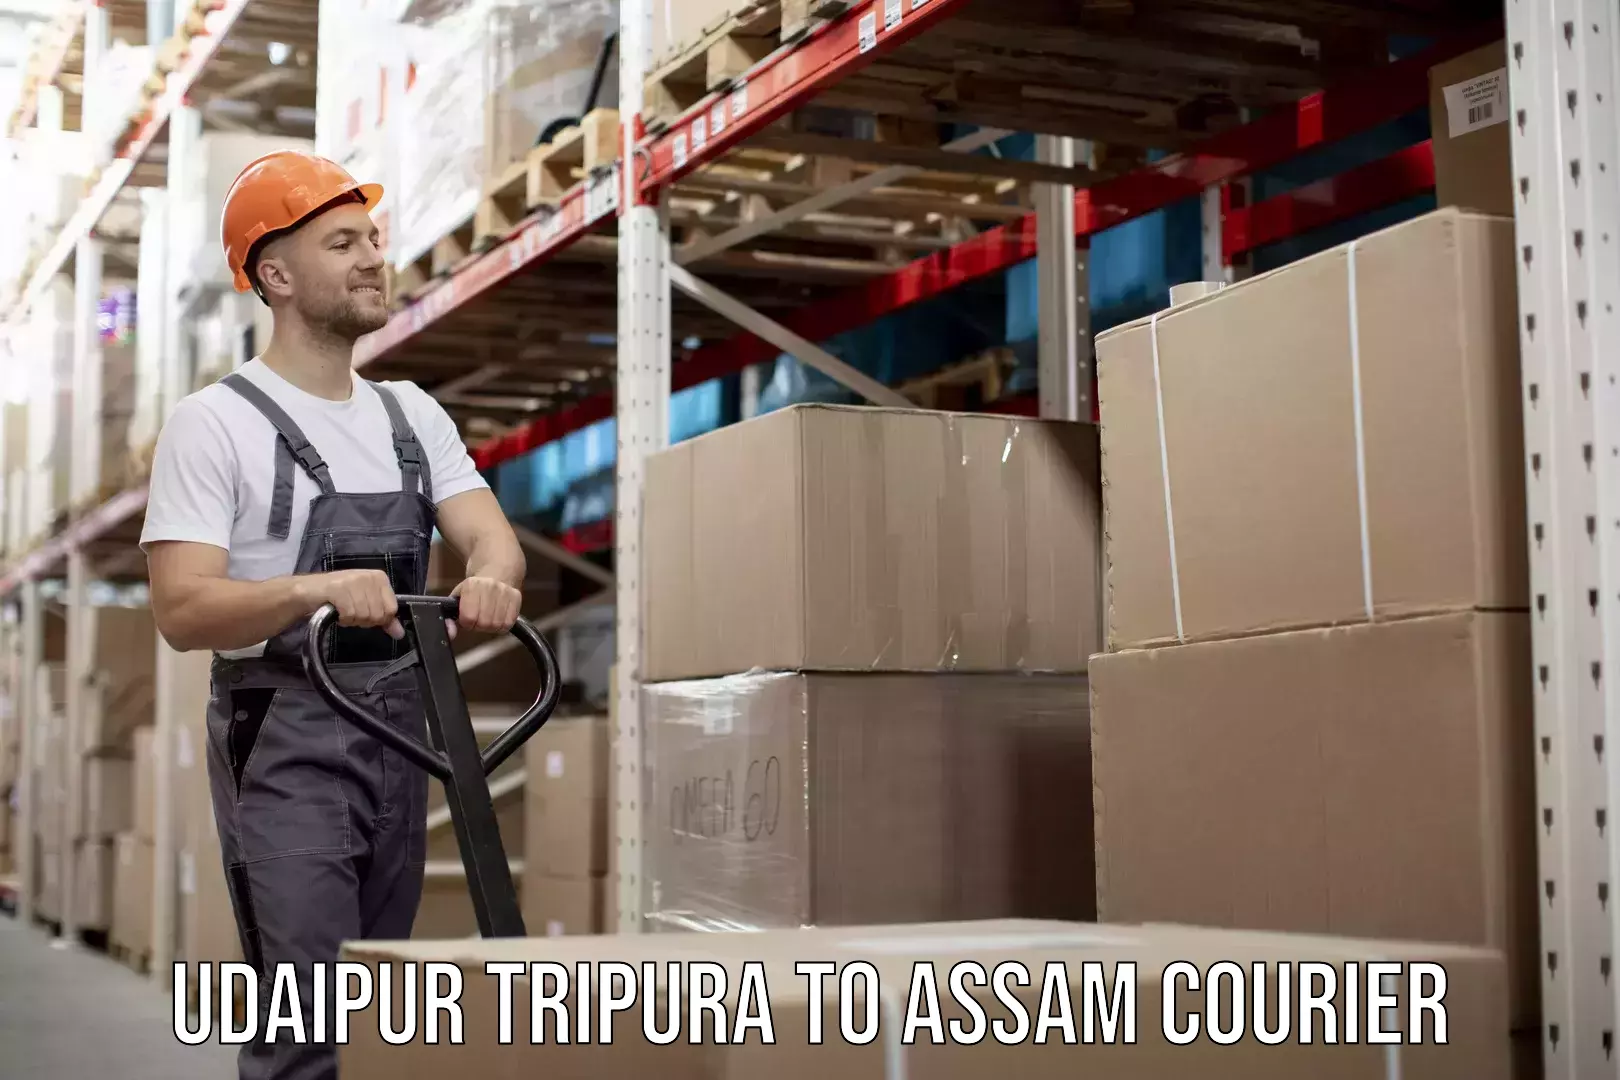 Affordable parcel service Udaipur Tripura to Assam